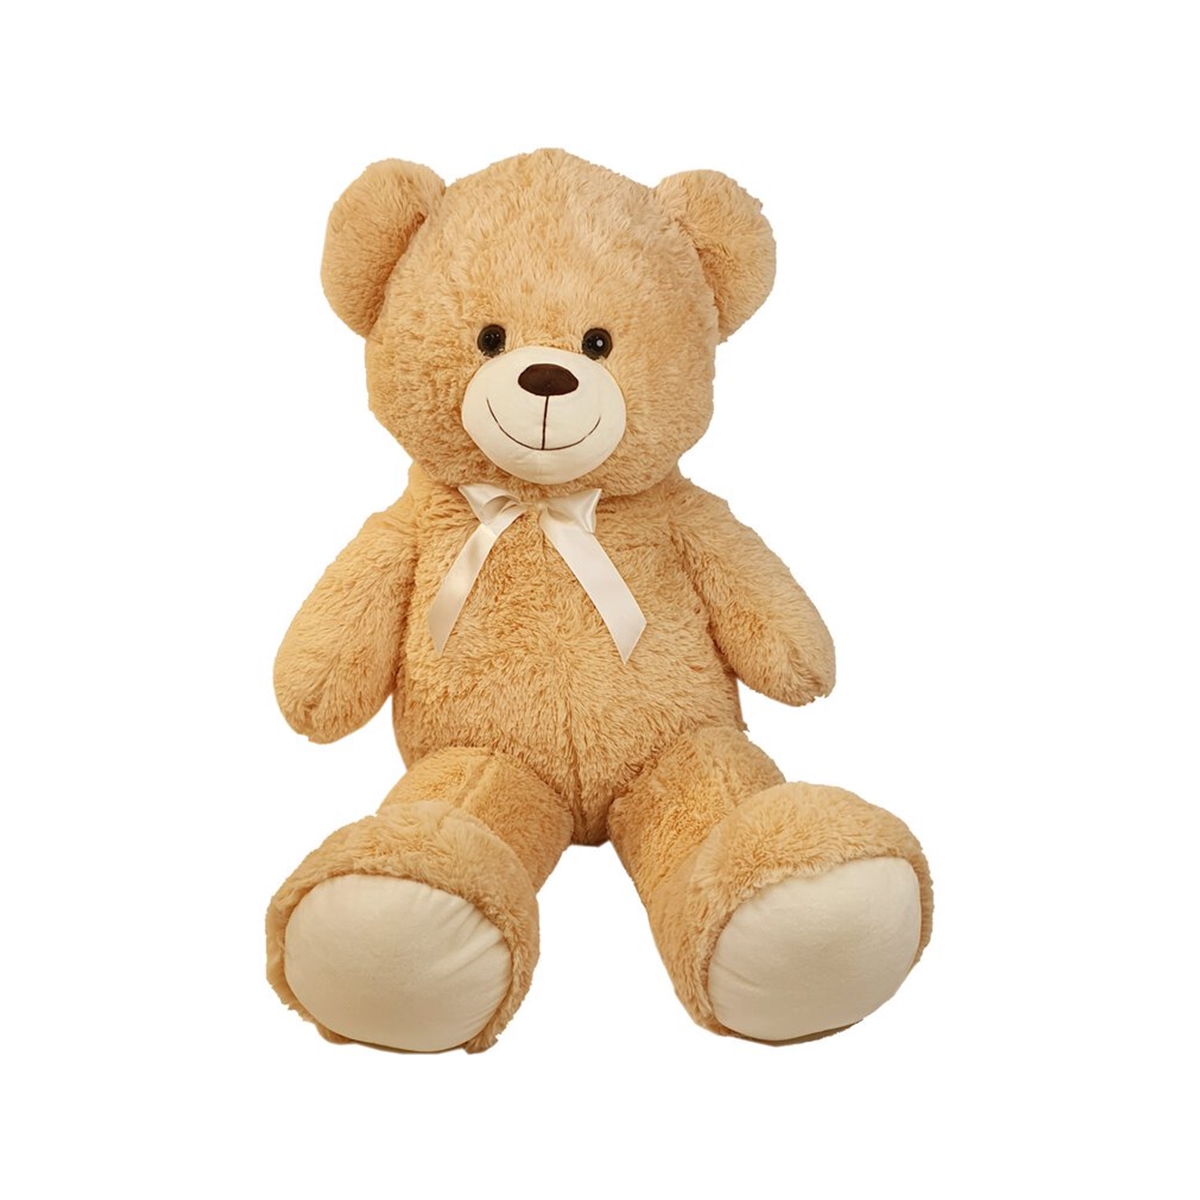 Plüschbär, Kuschelbär Beige 40cm gross - Knuddelbär, Kuscheltier oder Plüschtier ist dieser Teddy Bär